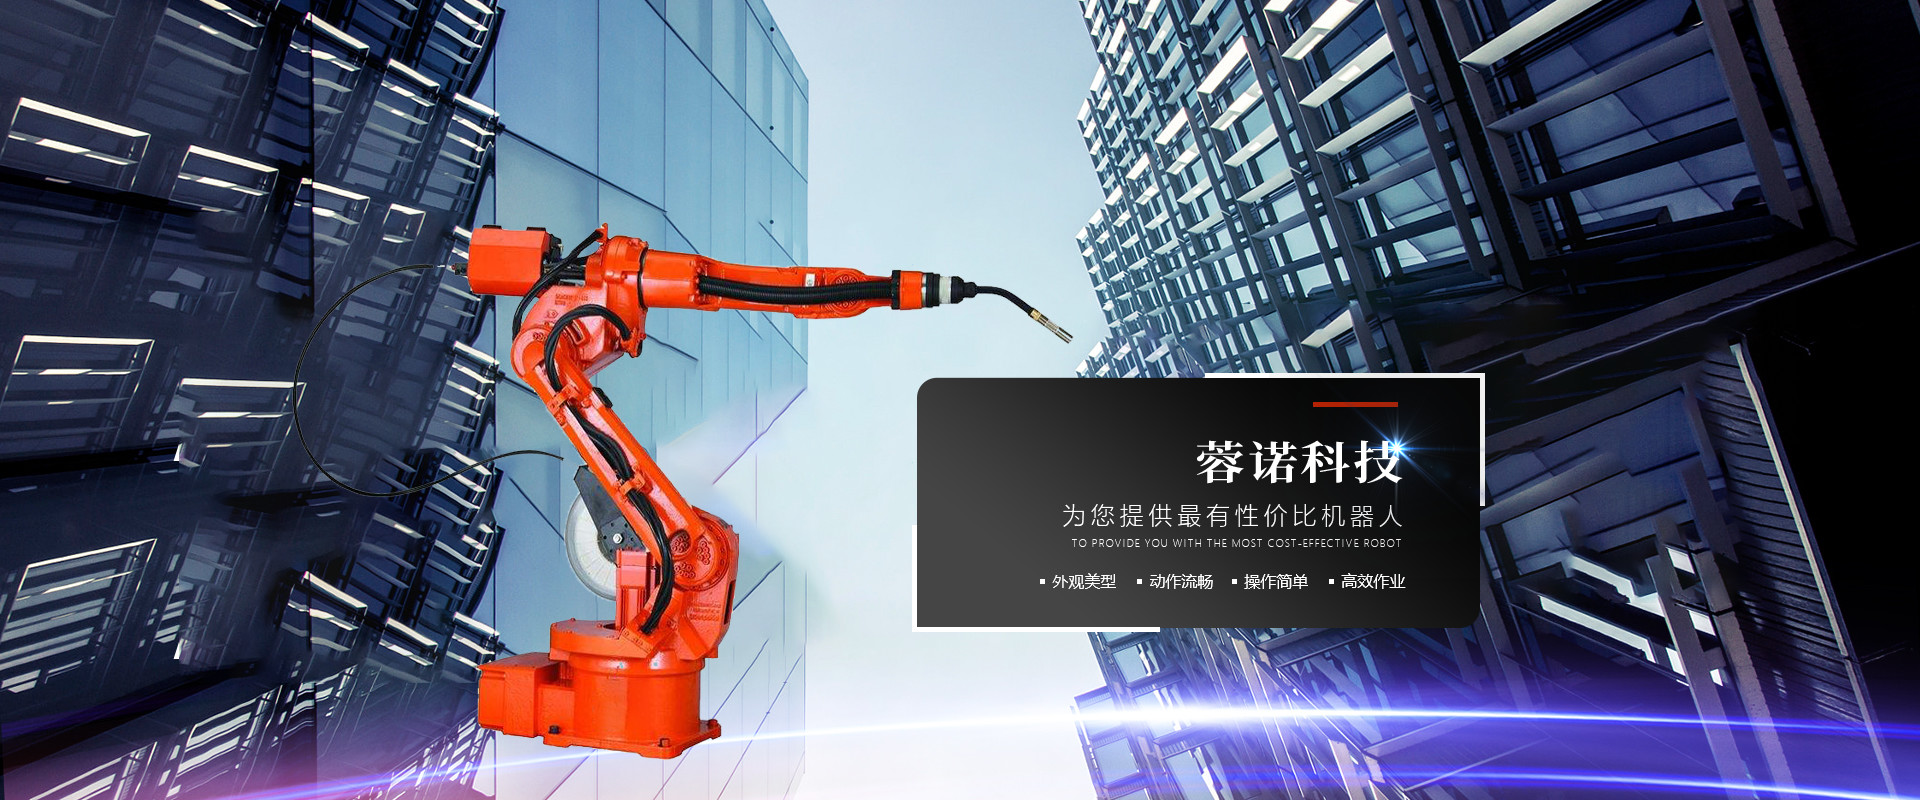 工业自动生产设备供应商_自动生产设备类型相关-四川蓉诺科技有限公司